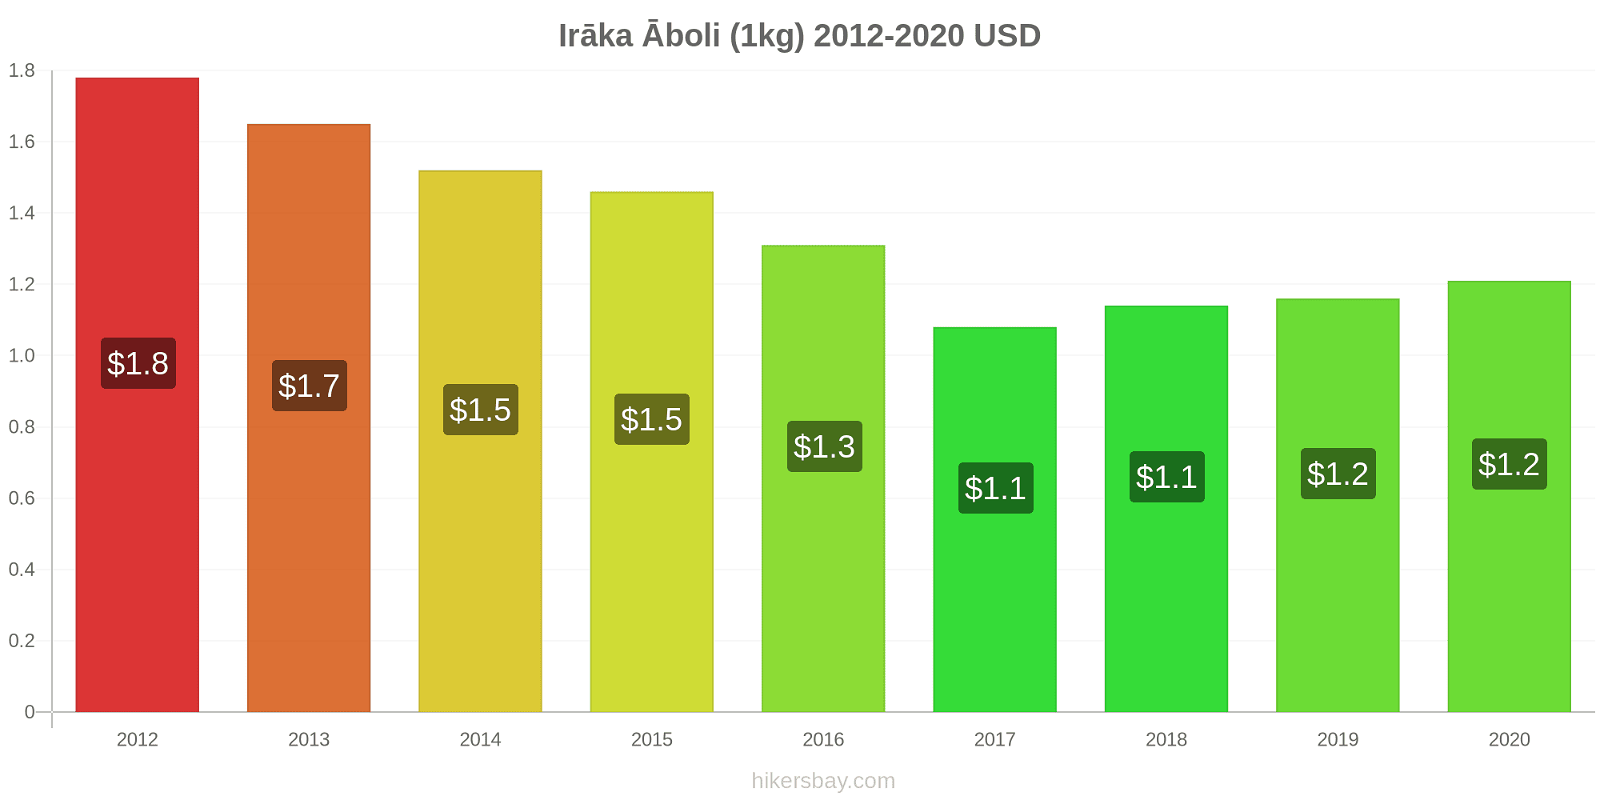 Irāka cenu izmaiņas Āboli (1kg) hikersbay.com